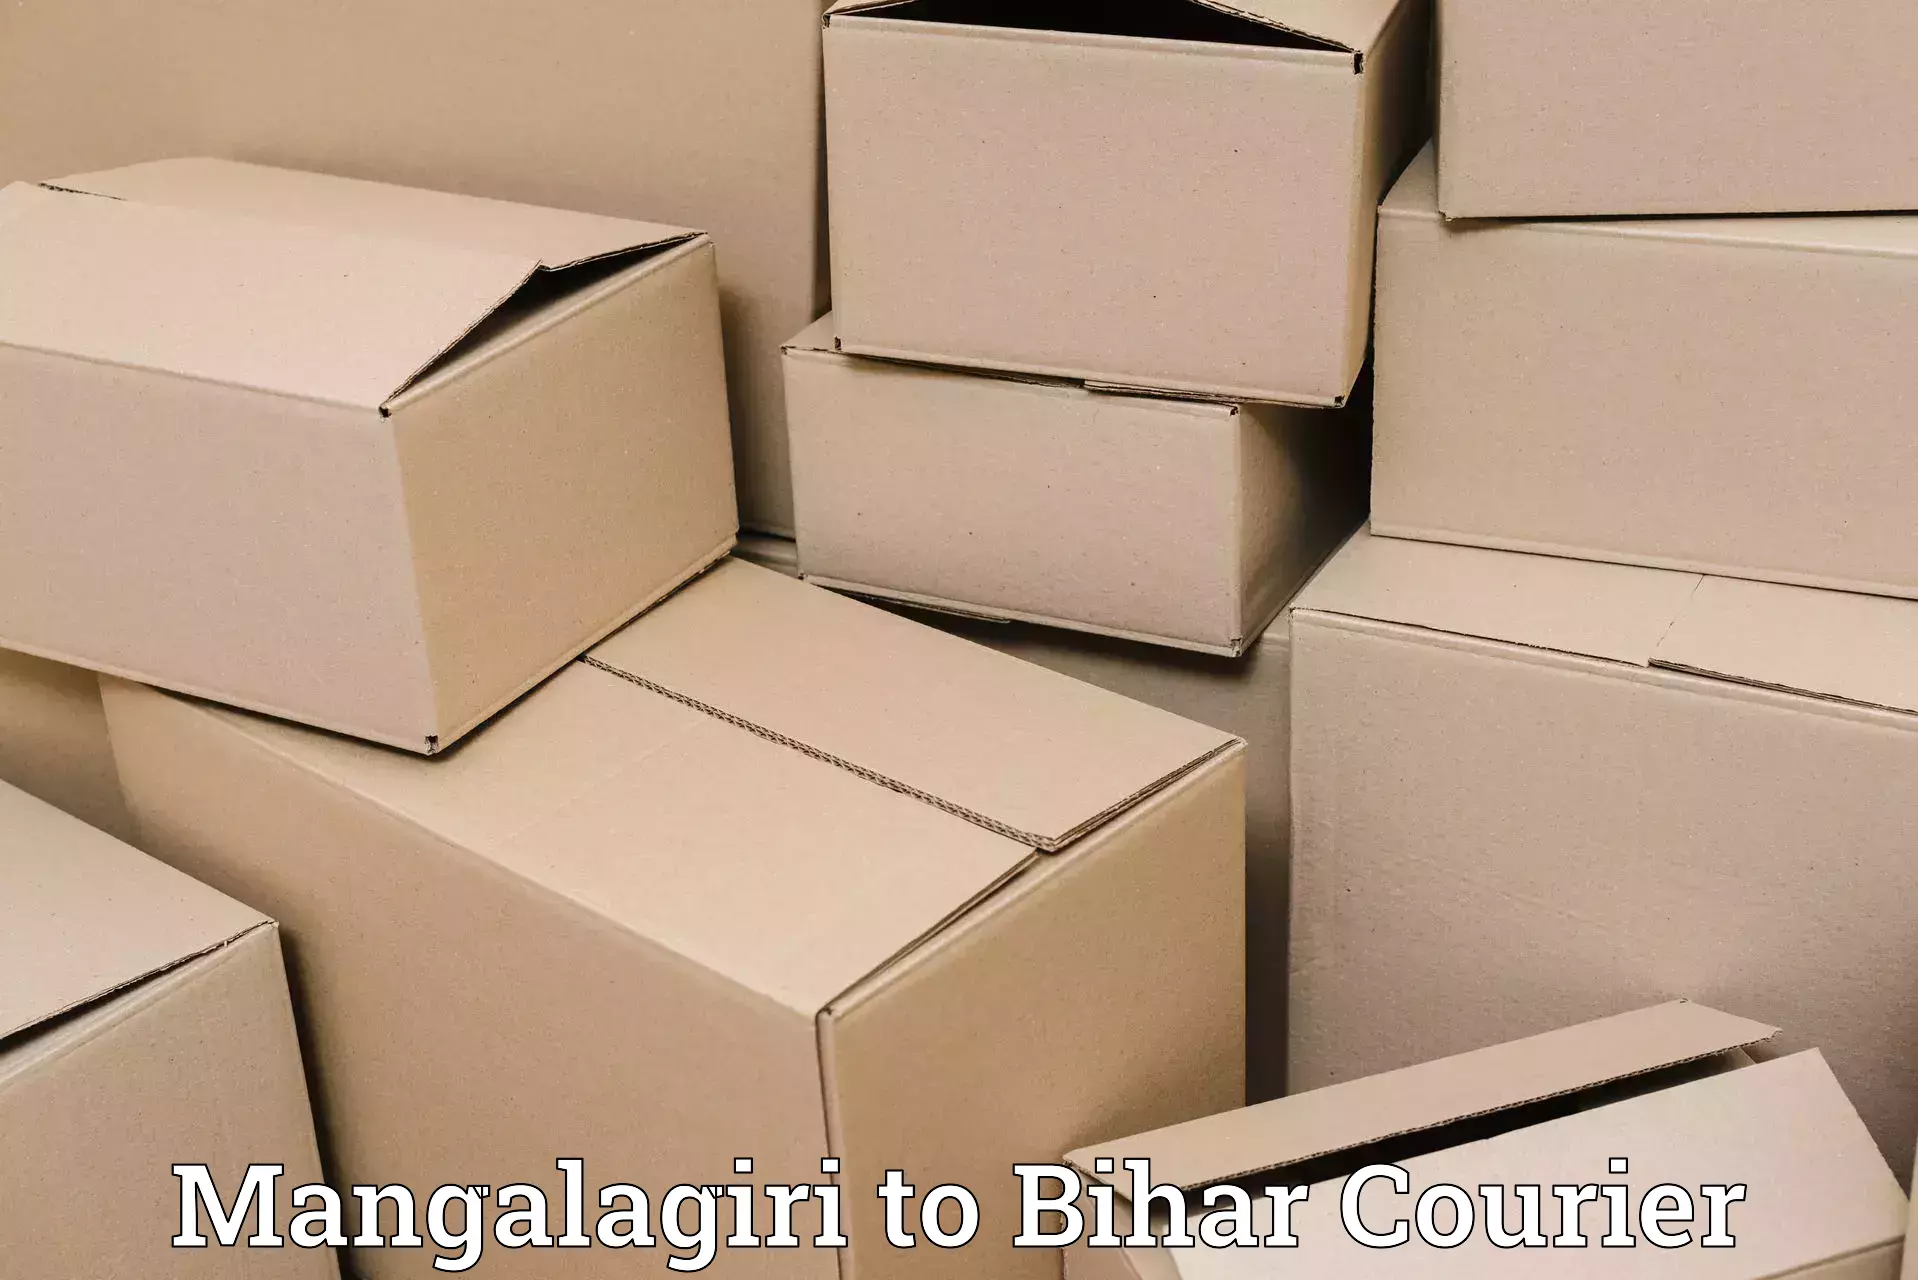 Customer-centric shipping Mangalagiri to Bihar Sharif